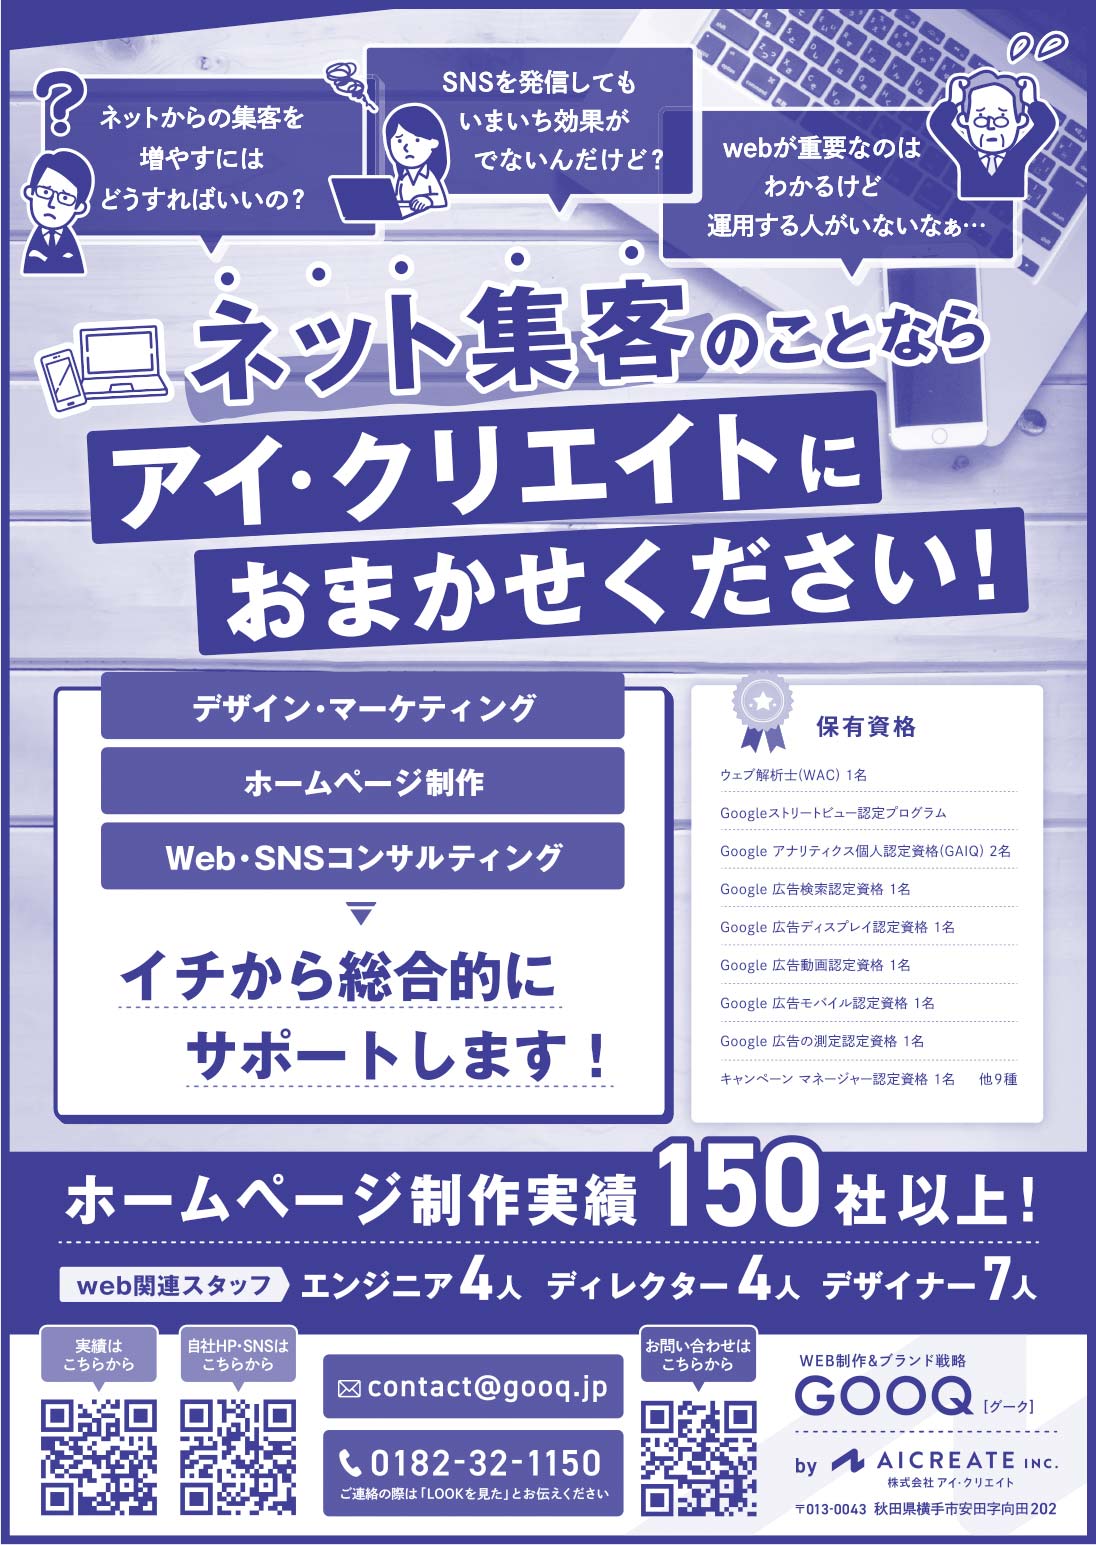 GOOQ様の2020.03.27号広告